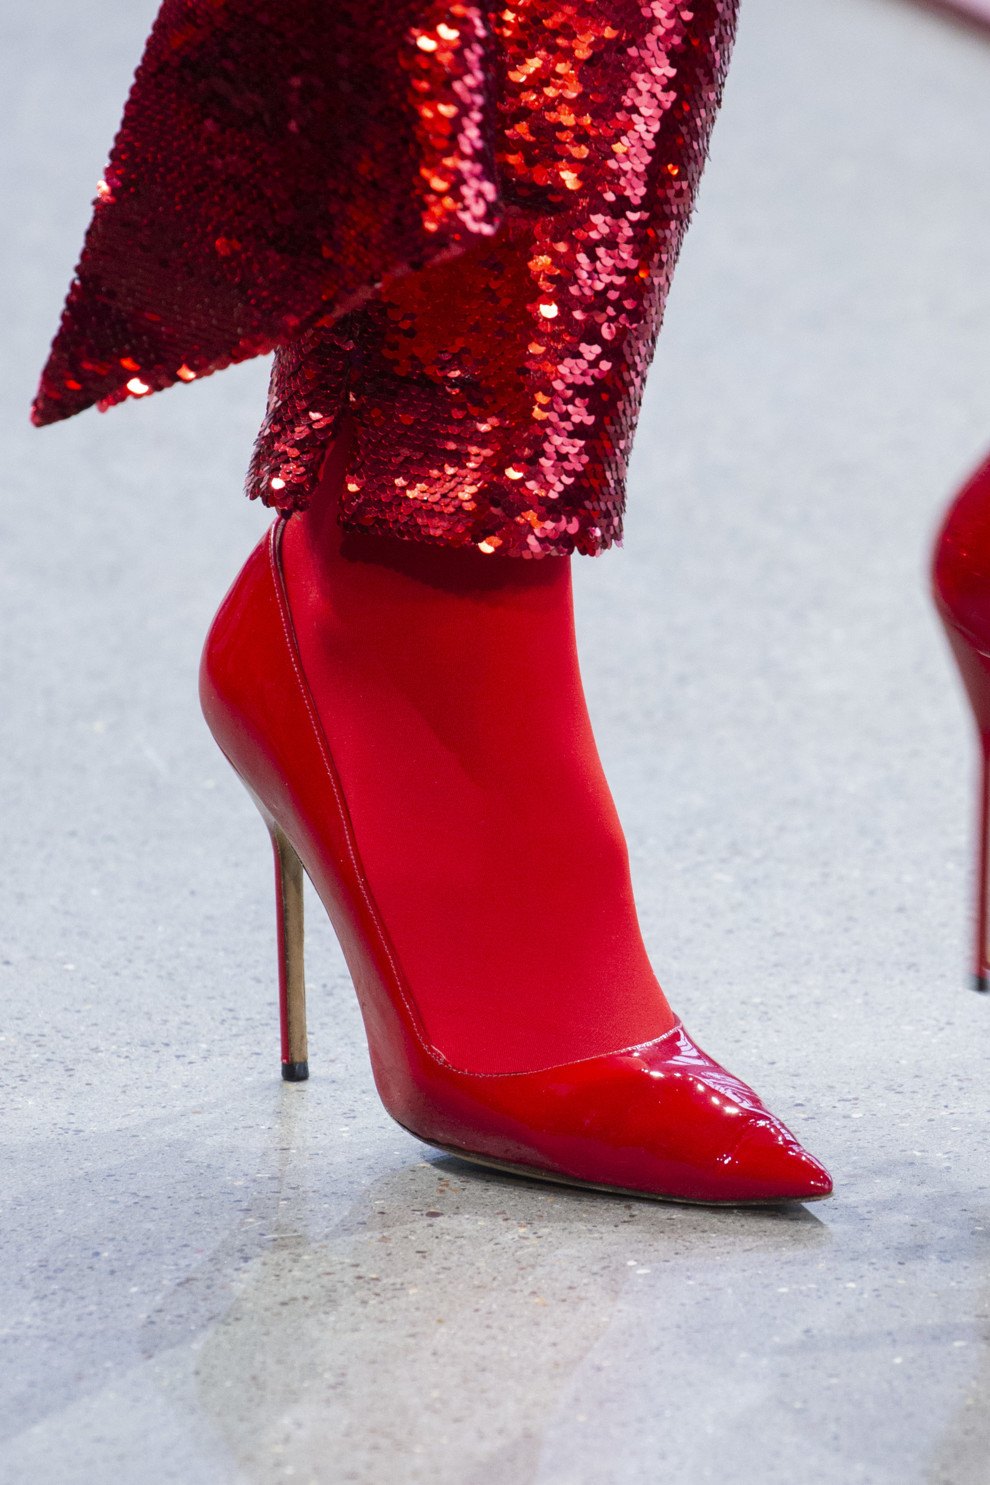 Женские туфли – новые модели и тренды весны 2020